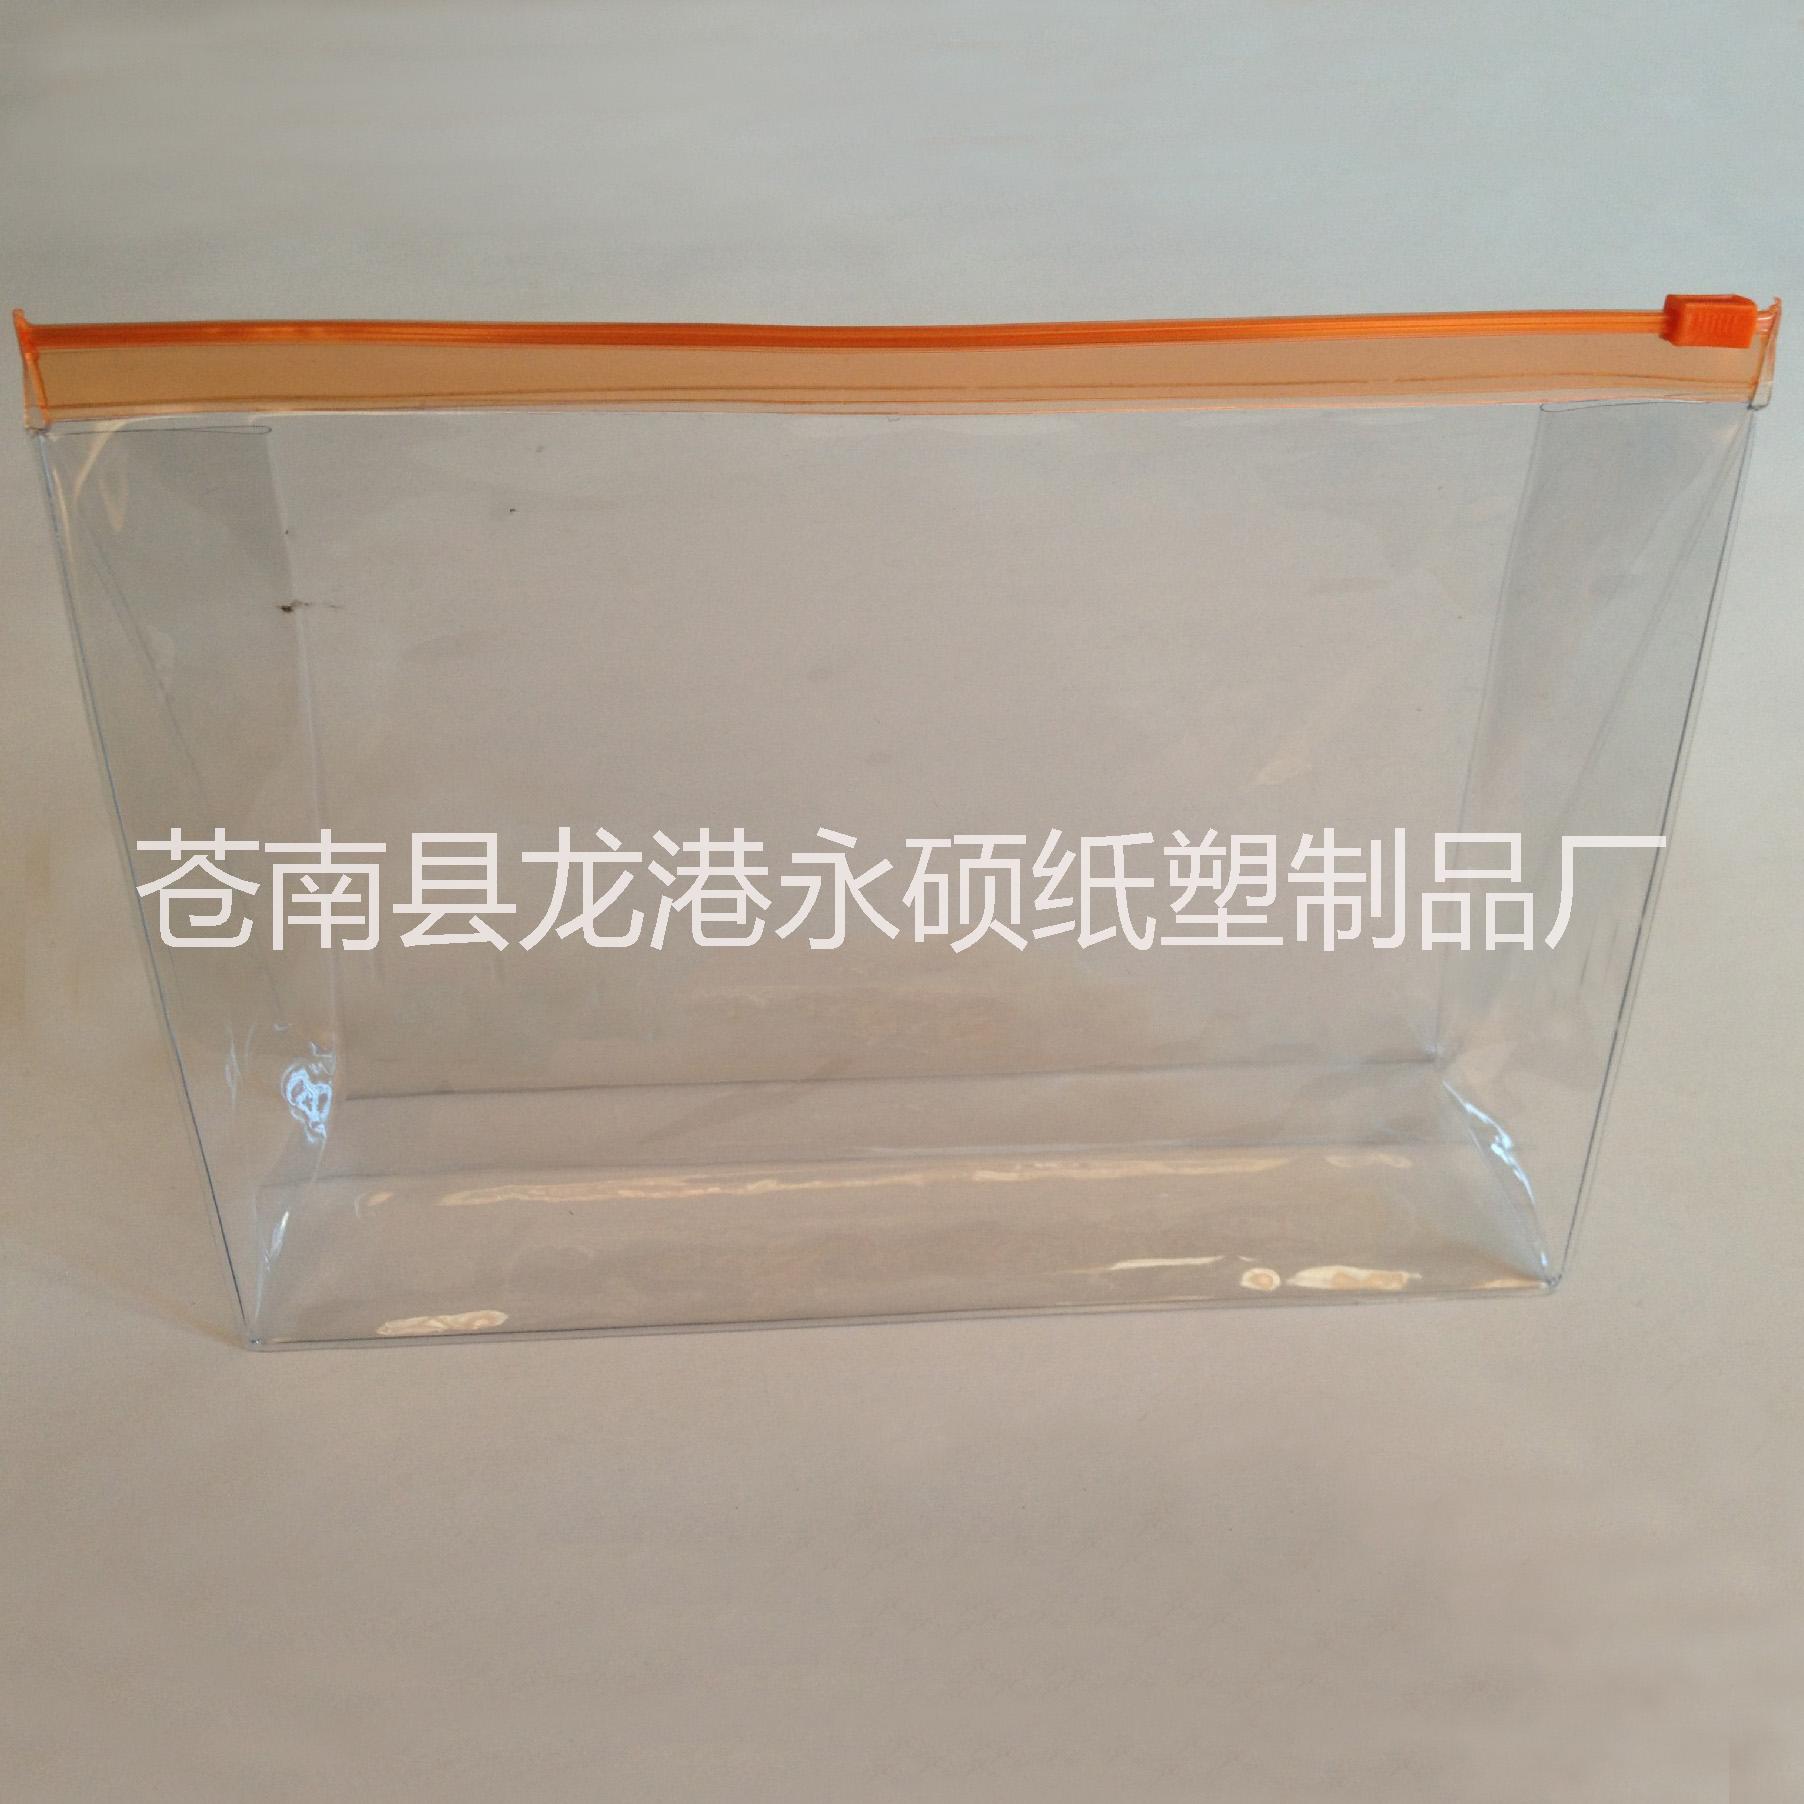 武汉pvc塑料袋pvc包装袋厂家定做批发